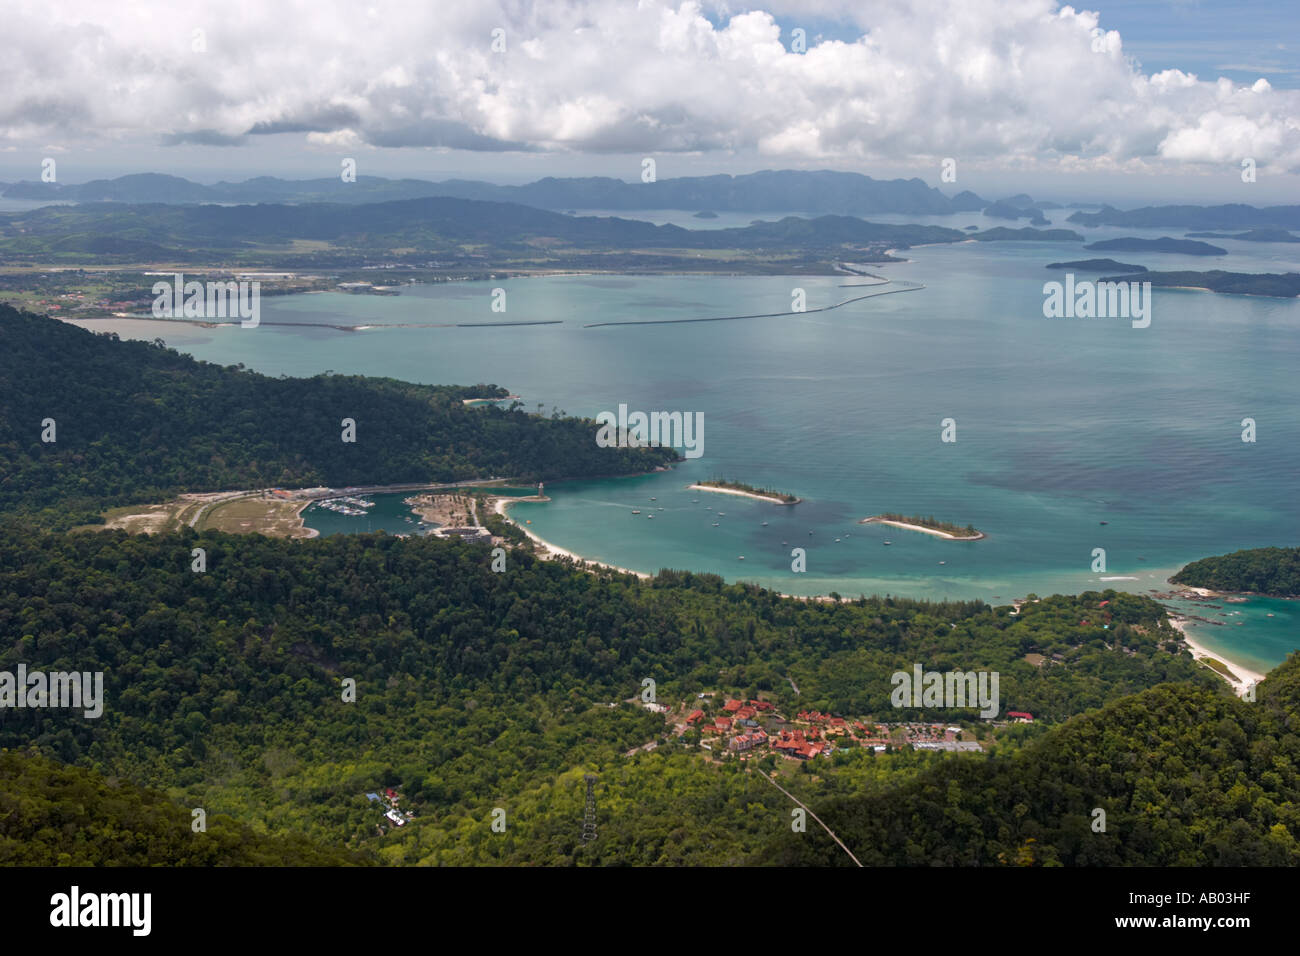 Une faible vue aérienne de la partie occidentale de l'île de Langkawi. La Malaisie. Banque D'Images